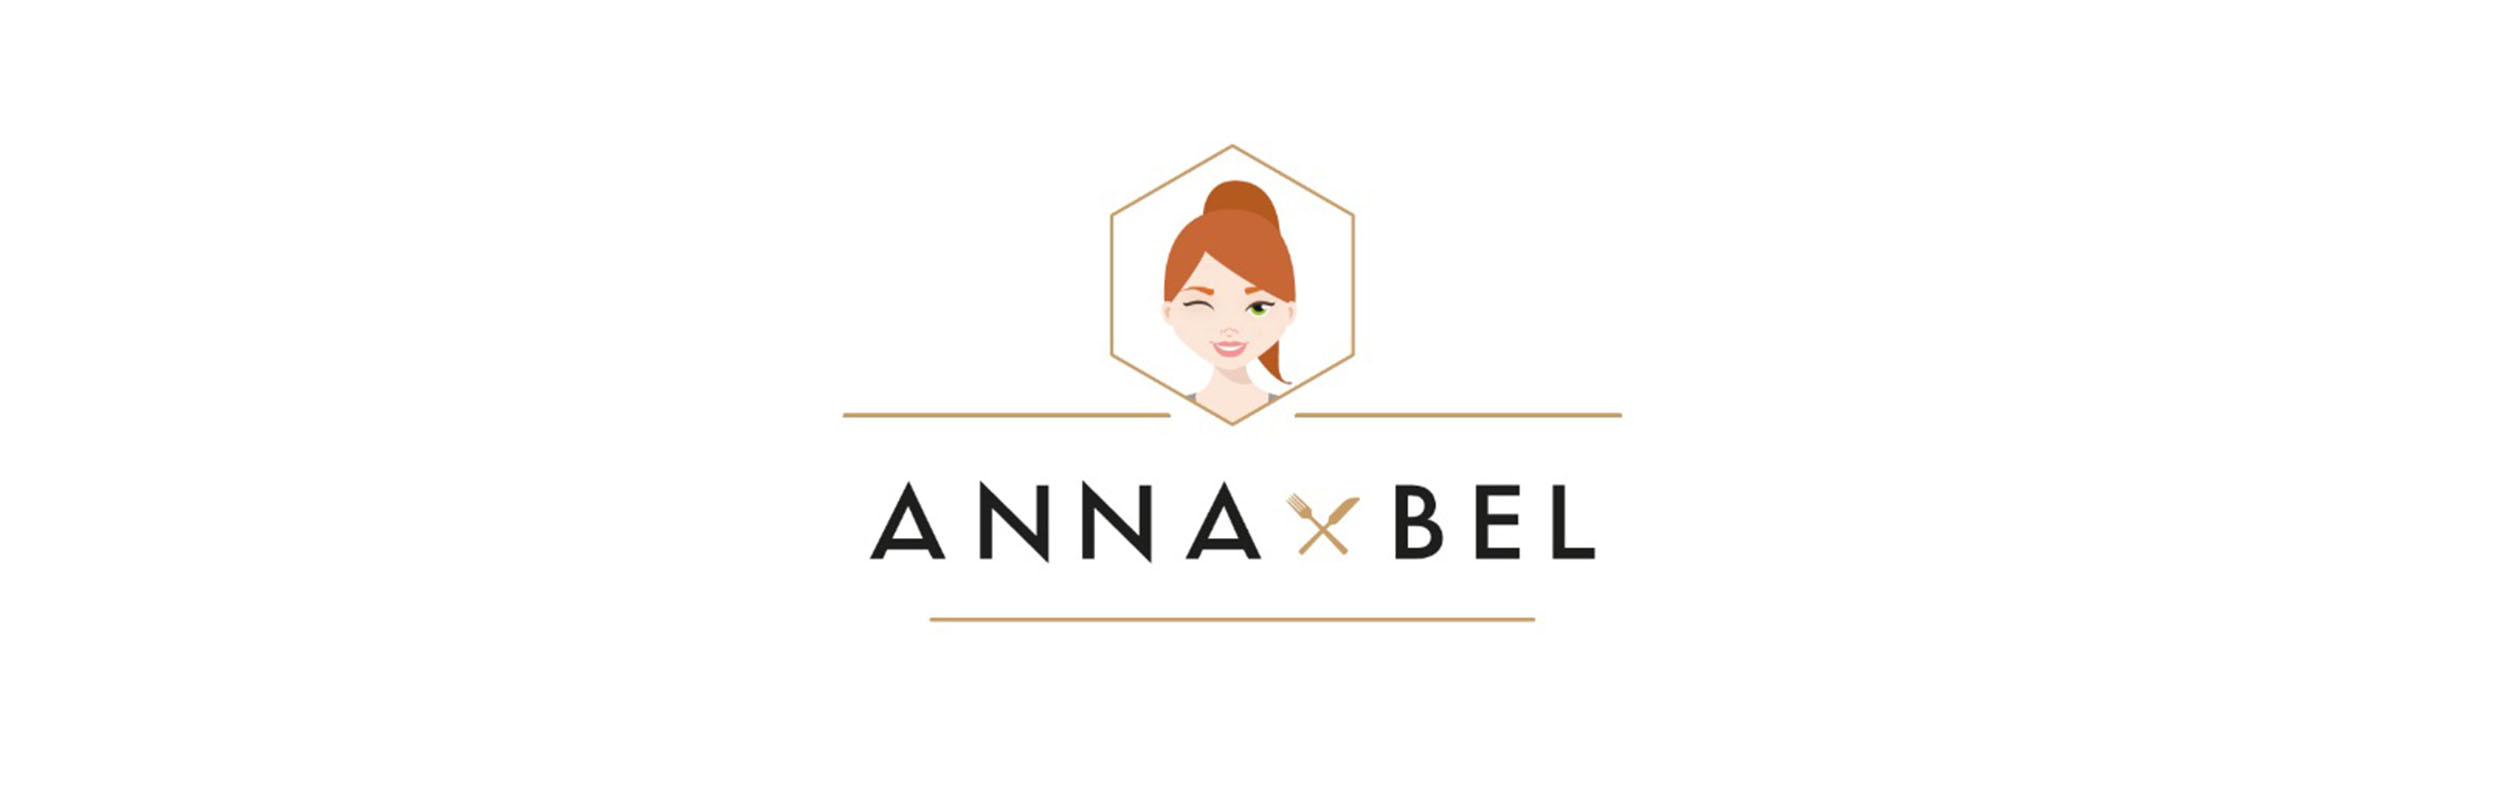 Anna-Bel